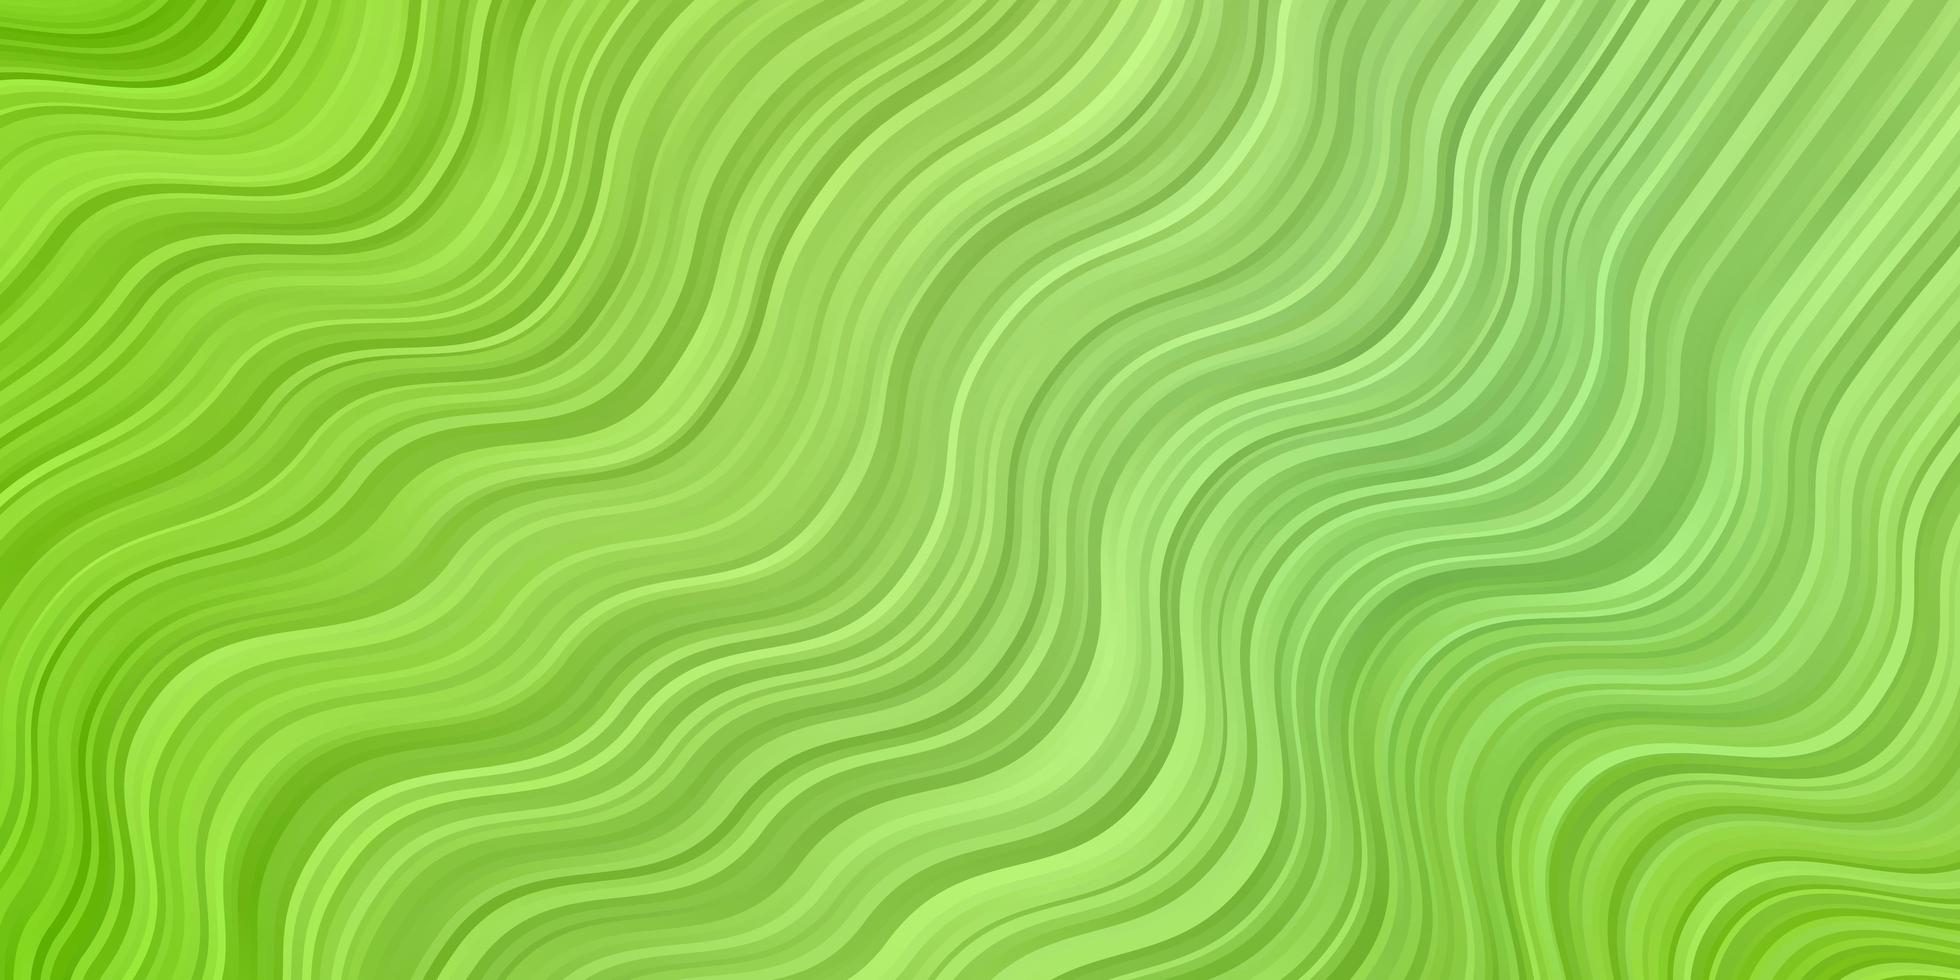 sfondo vettoriale verde chiaro con linee.